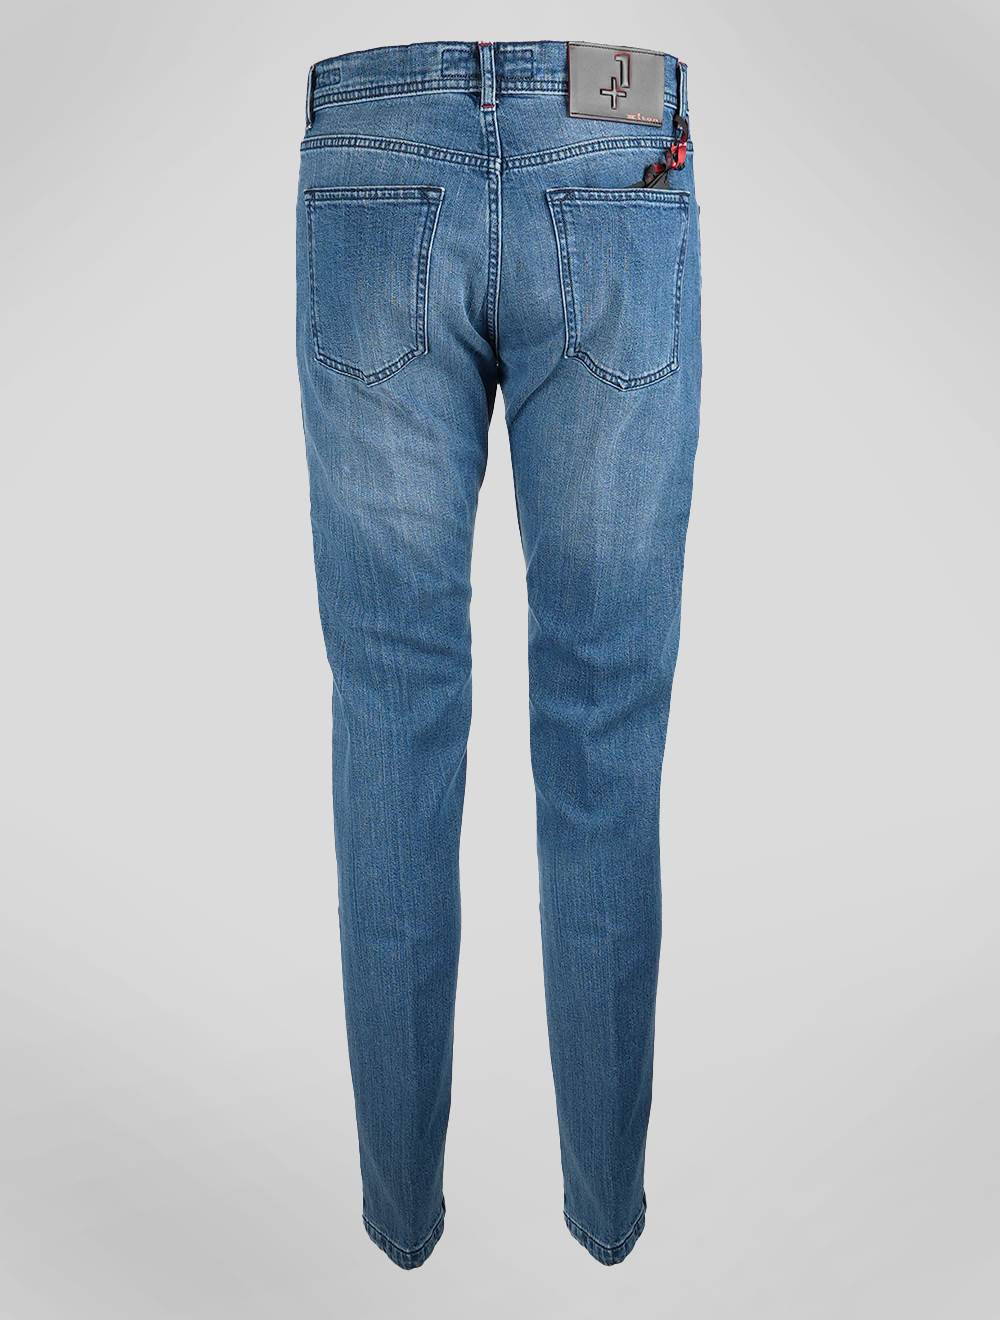 Kiton Light Blue Cotton Ea Jeans Edición especial